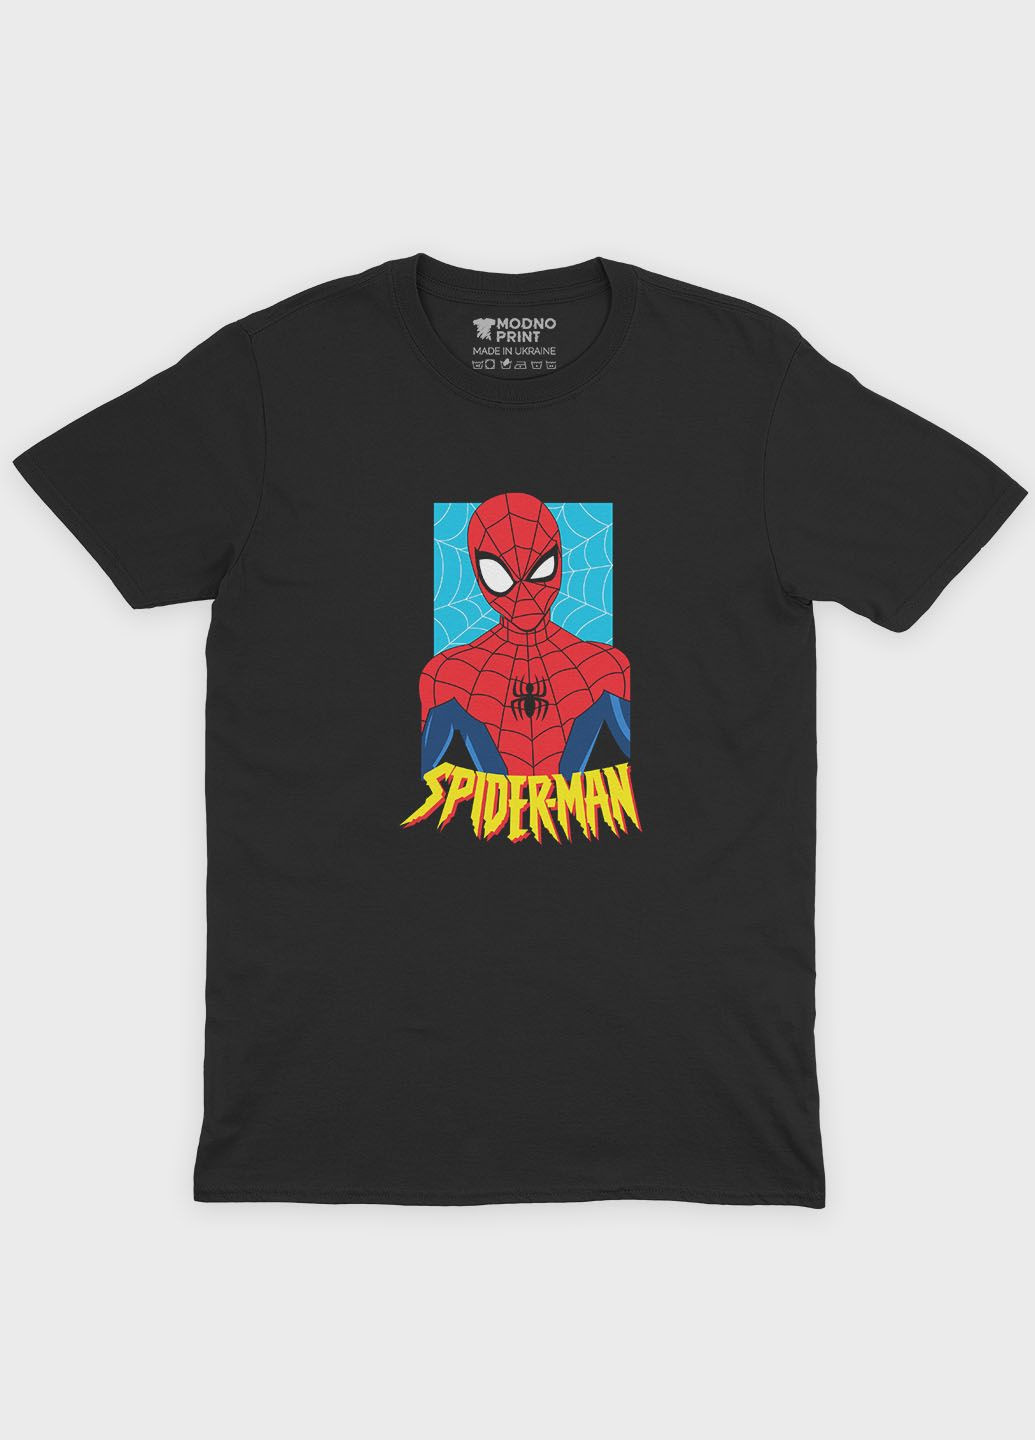 Черная демисезонная футболка для мальчика с принтом супергероя - человек-паук (ts001-1-bl-006-014-037-b) Modno